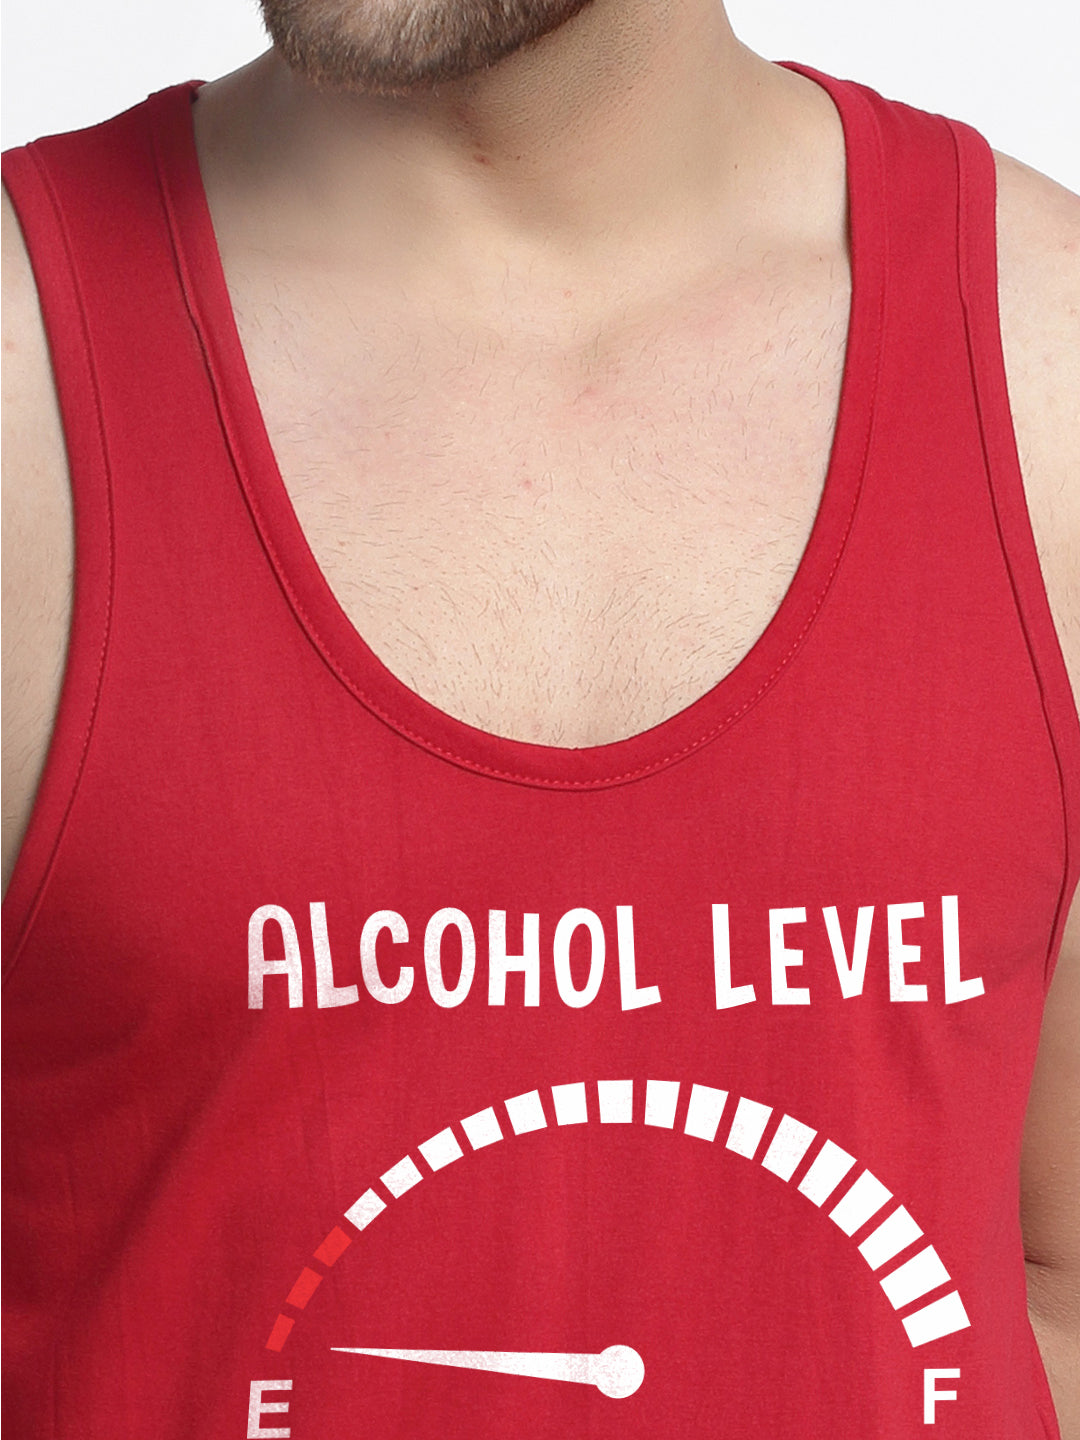 Men's Alcohol Level printed Pure Cotton Gym Vest - Friskers